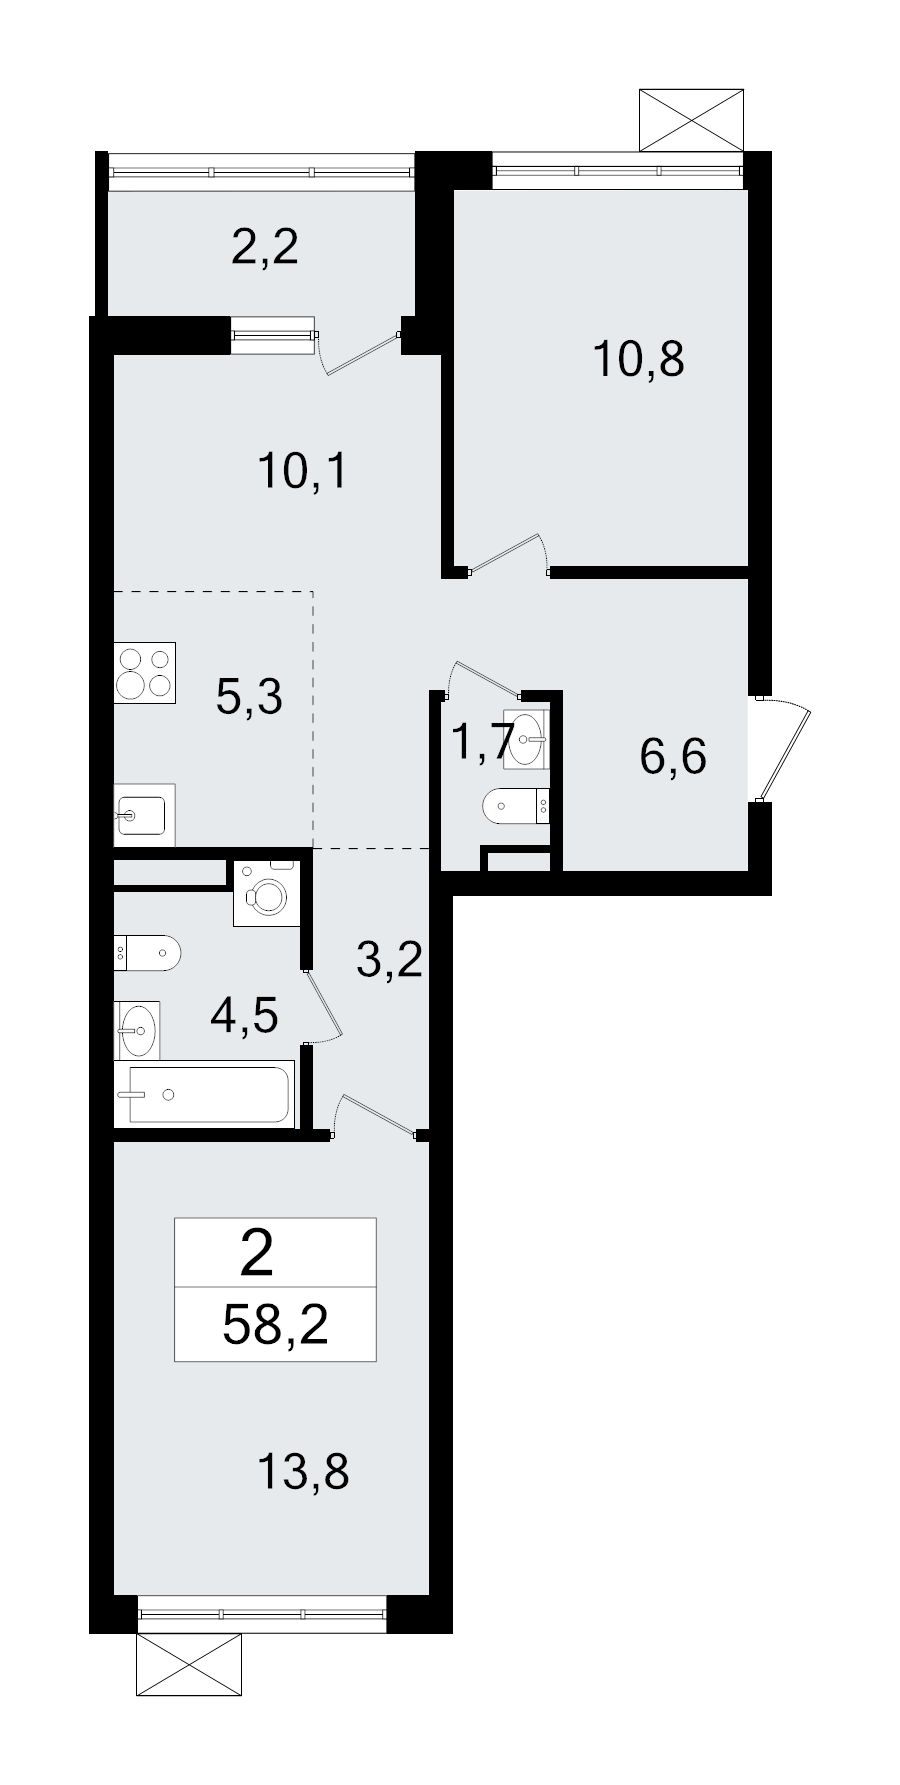 3-комнатная (Евро) квартира, 58.2 м² в ЖК "А101 Всеволожск" - планировка, фото №1